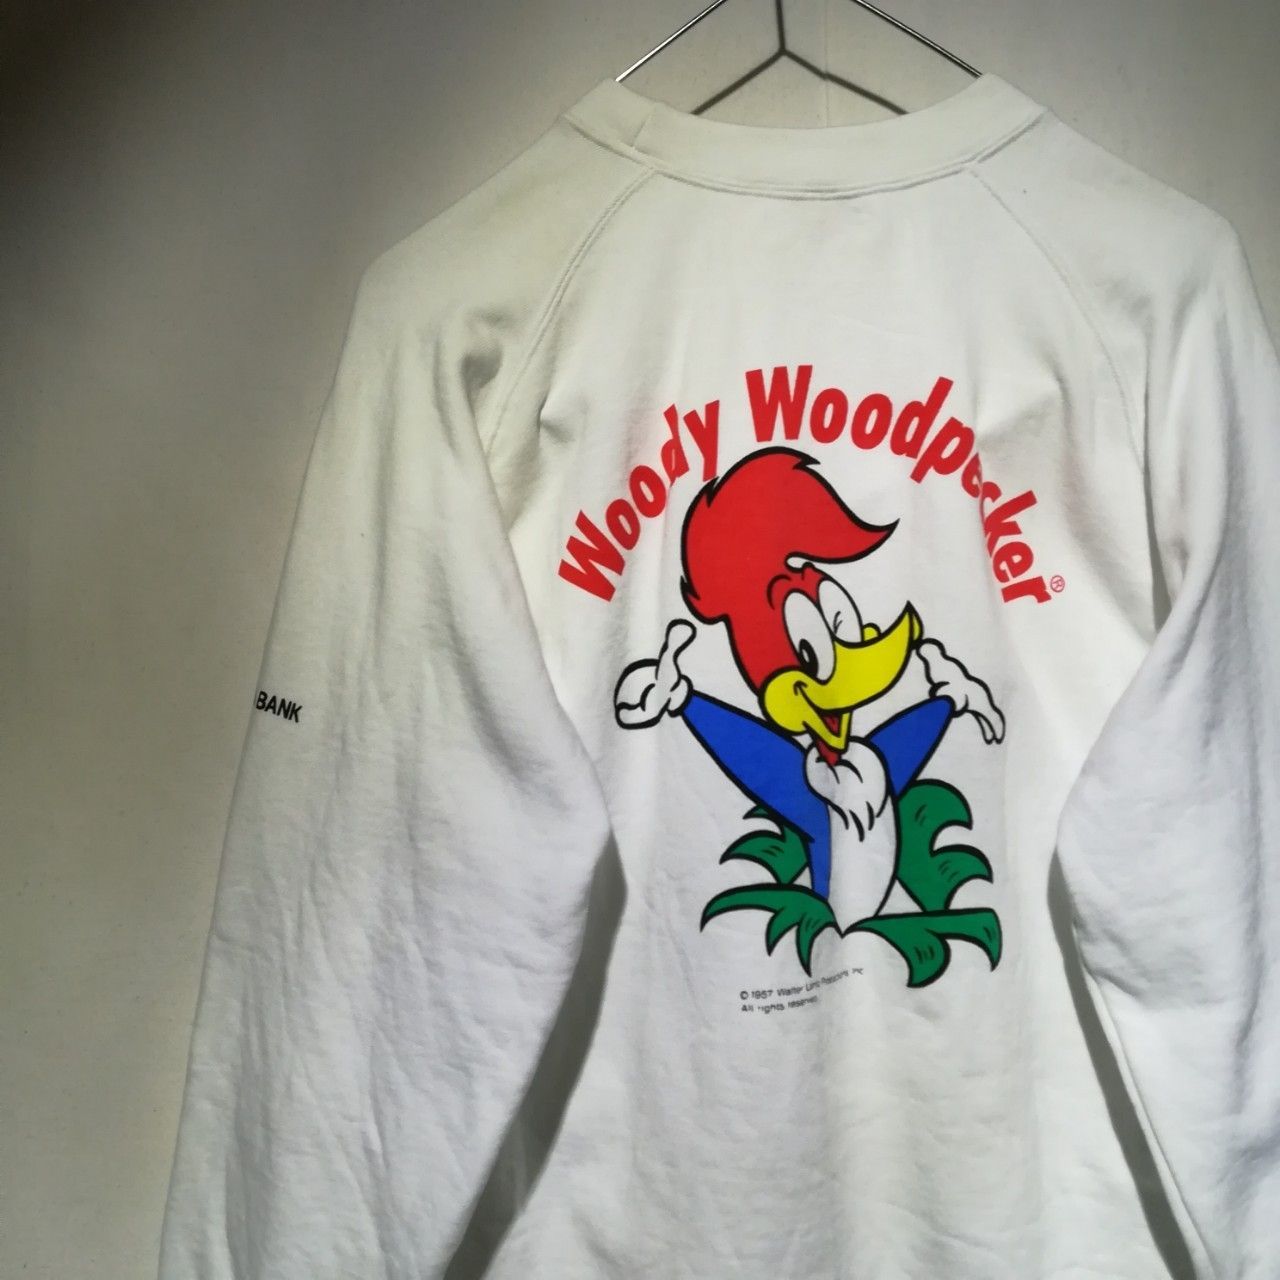 9/1値段見直し】【WN230620-009】DAIKYO Woody Woodpecker ウッディー